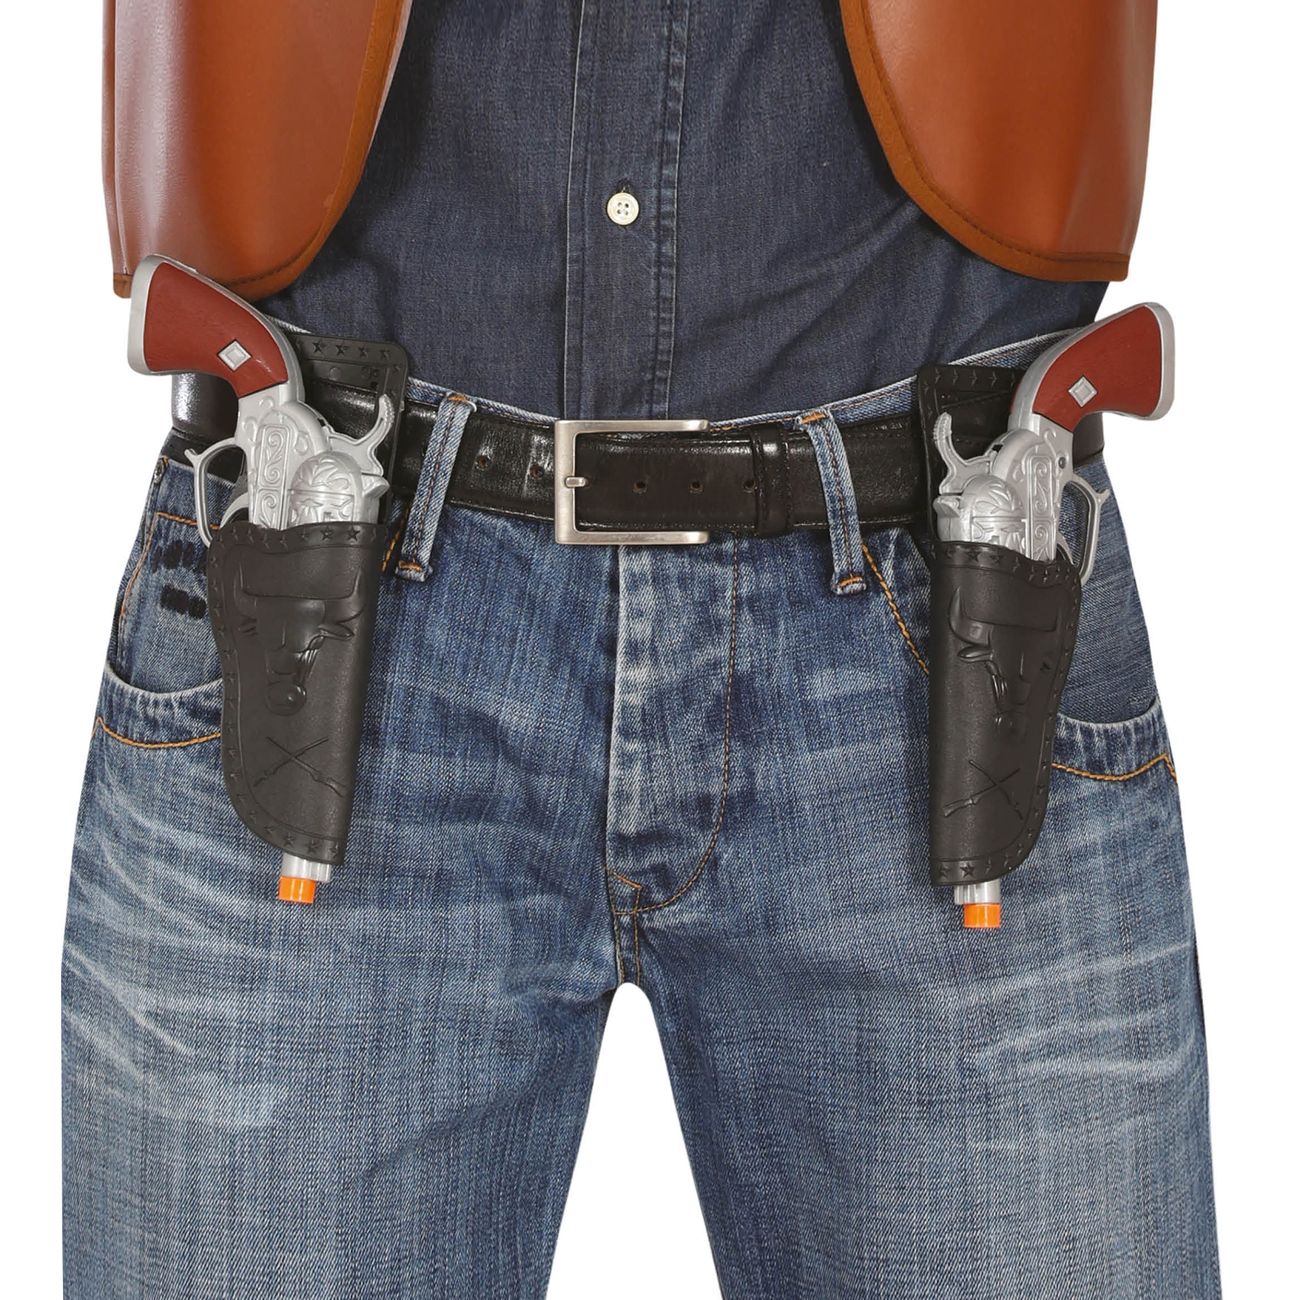 svarta-cowboyholster-med-pistoler-98613-1